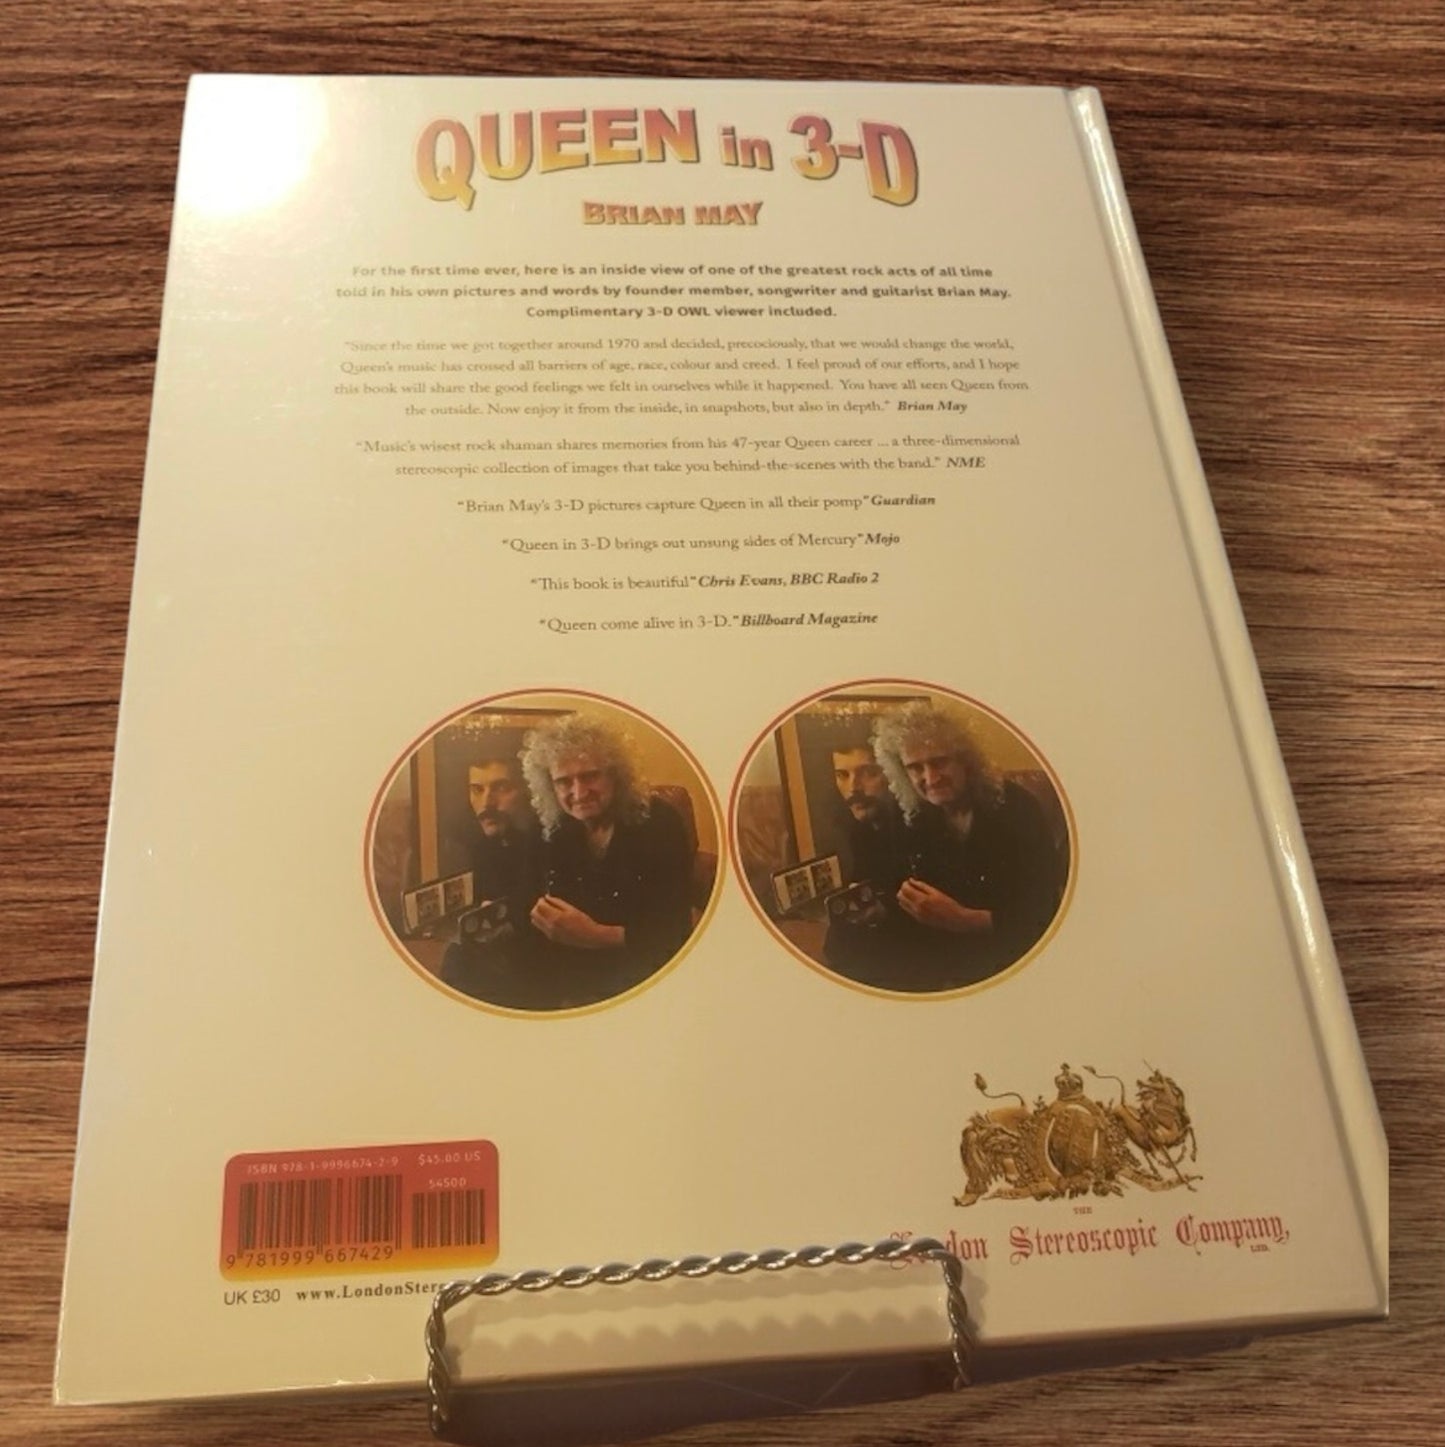 Queen in 3-D 2019: Bohemian Rhapsody Edition (Queen in 3-D: Bohemian Rhapsody Edition)